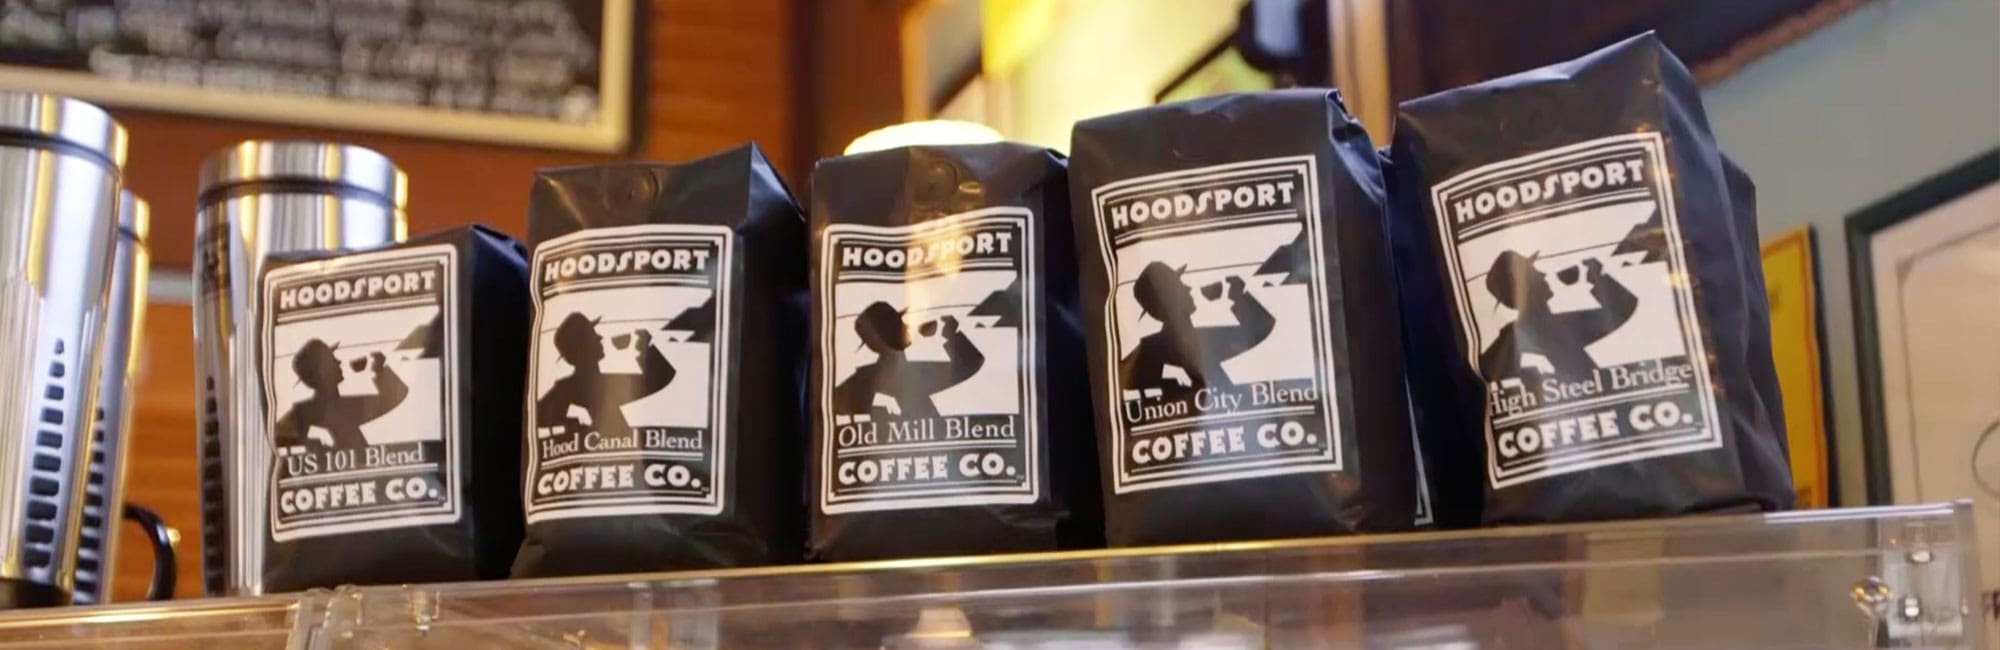 Hoodsport Coffee Company coffee